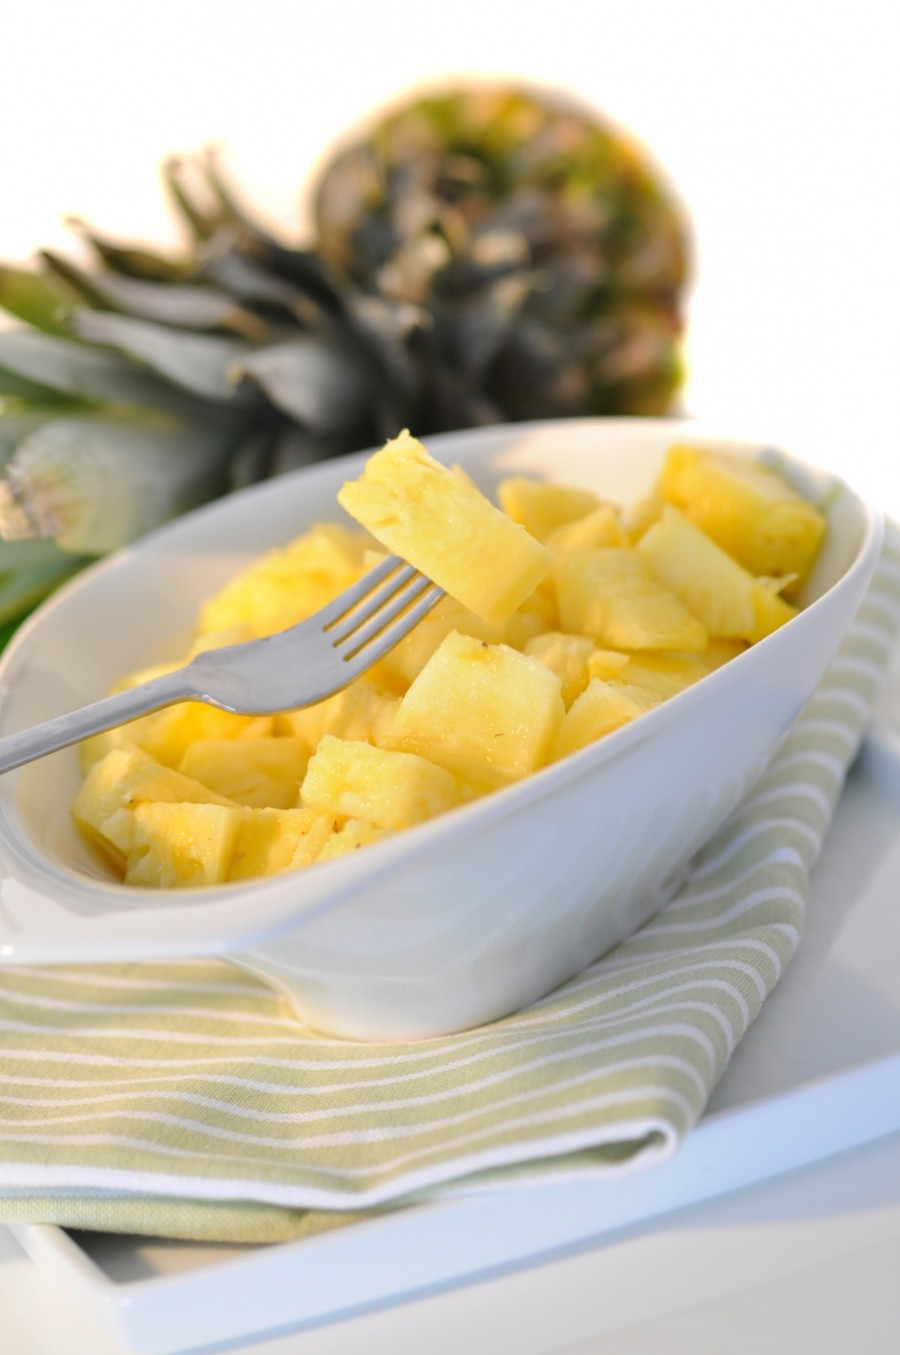 Die saure Ananas in Stücke schneiden und eine Prise Salz darüber streuen. Etwas ziehen lassen und schon schmeckt die Ananas süßer. 